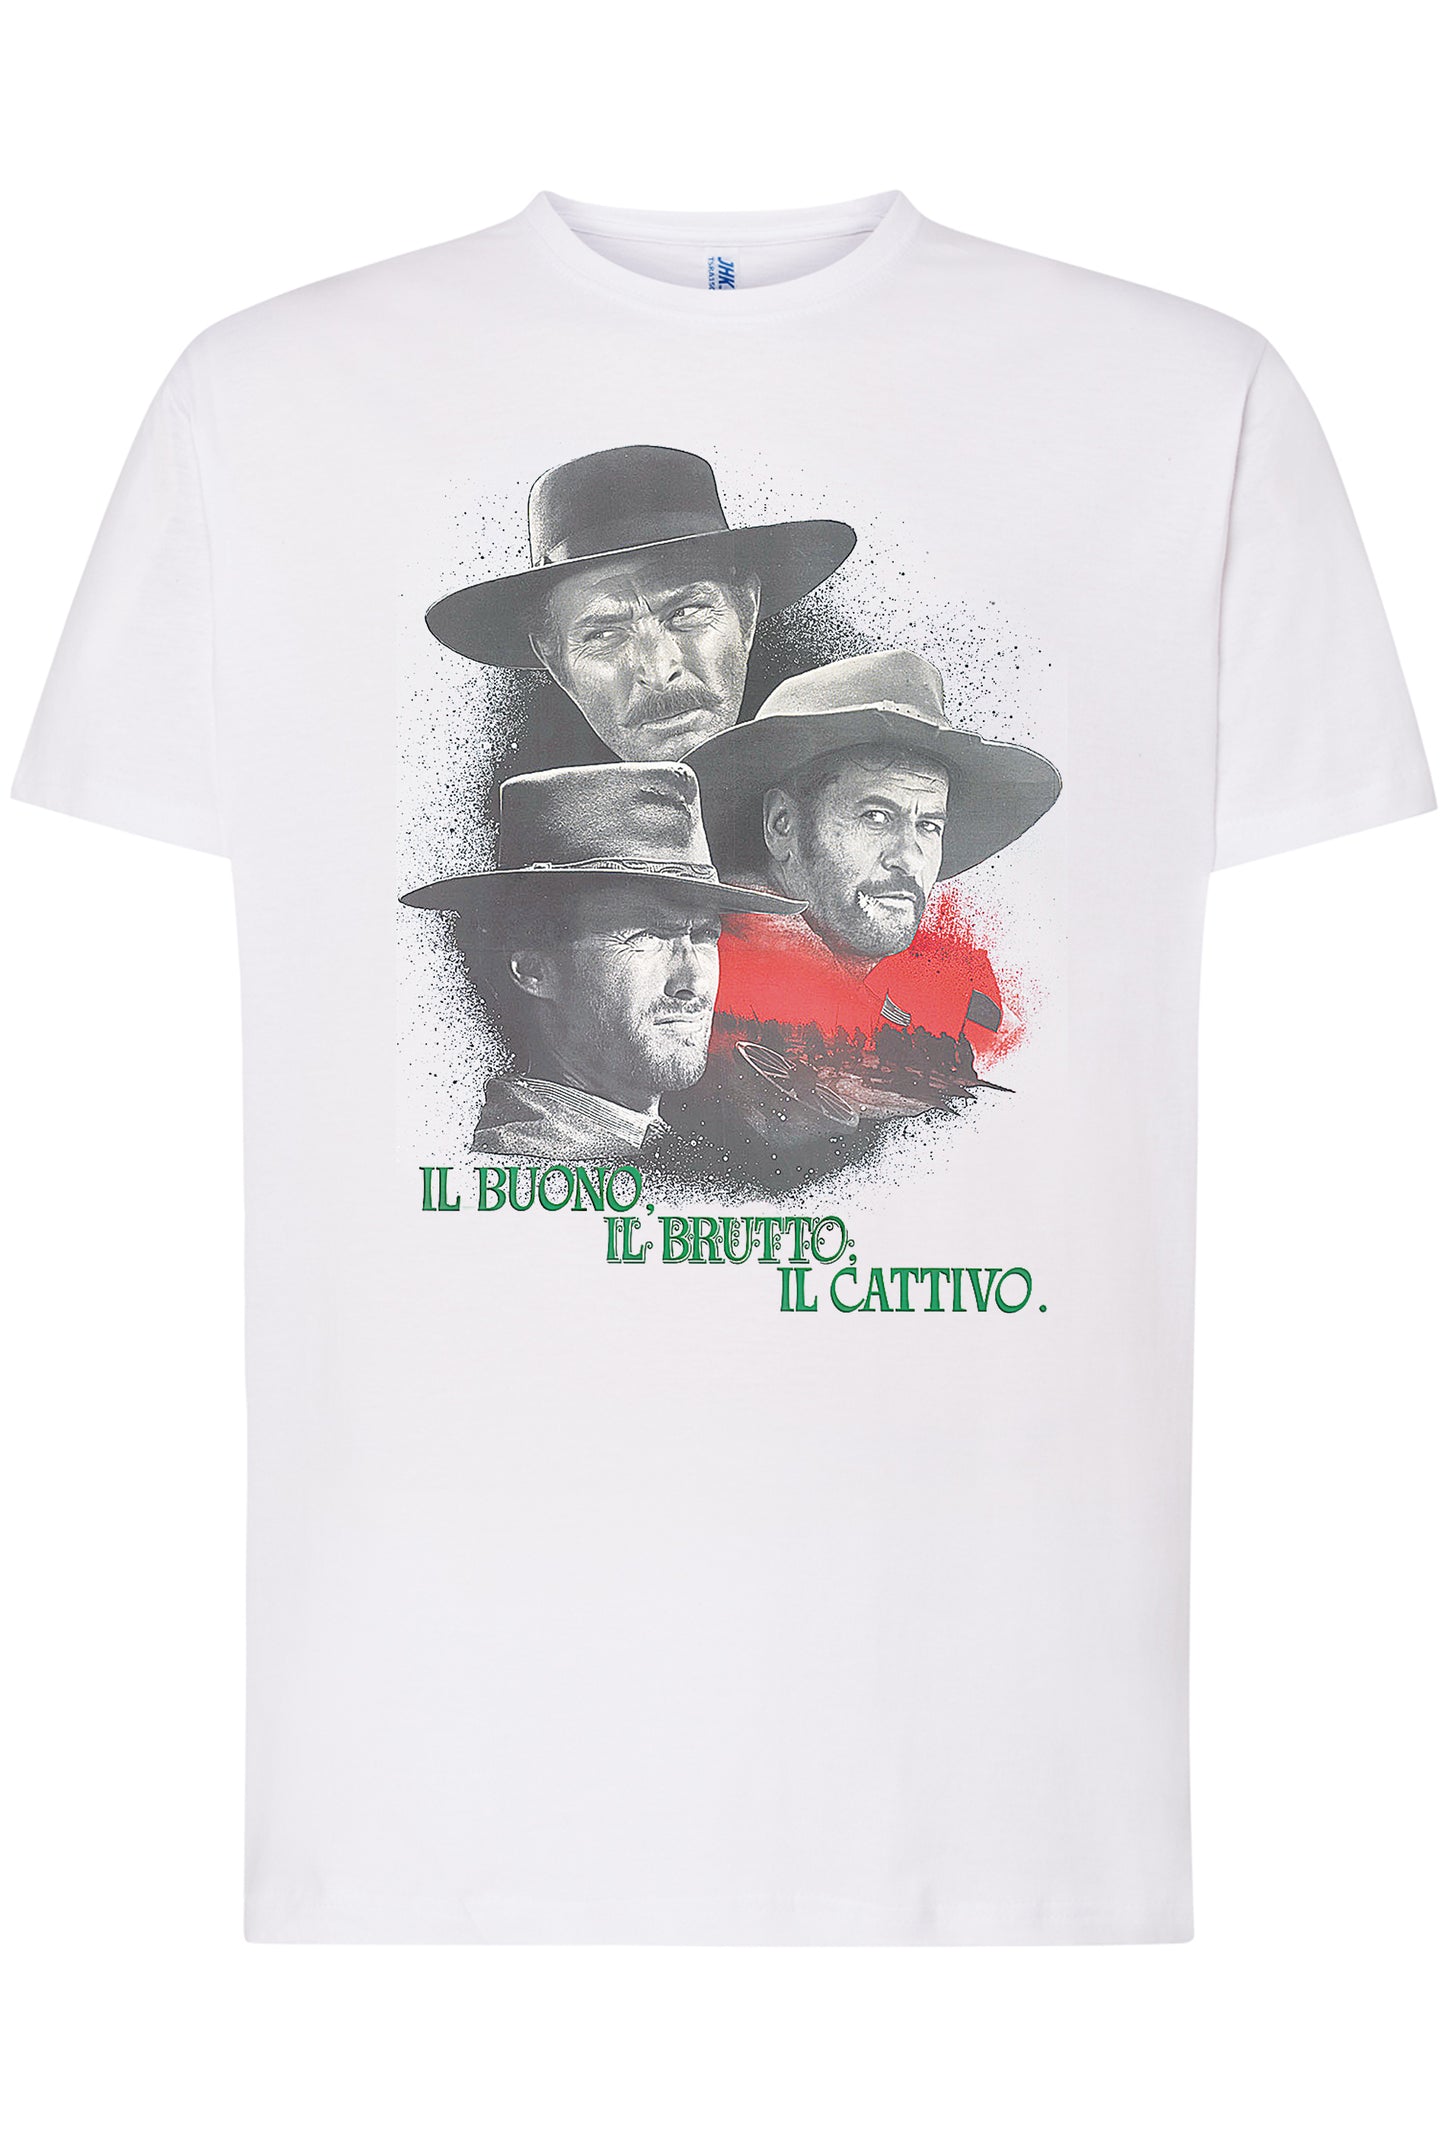 The Legend Il Bello il Brutto e il Cattivo Poster Soggetto Cinema Attori 18-80-2 T-shirt Urban Men Uomo 100% Cotone Pettinato JK